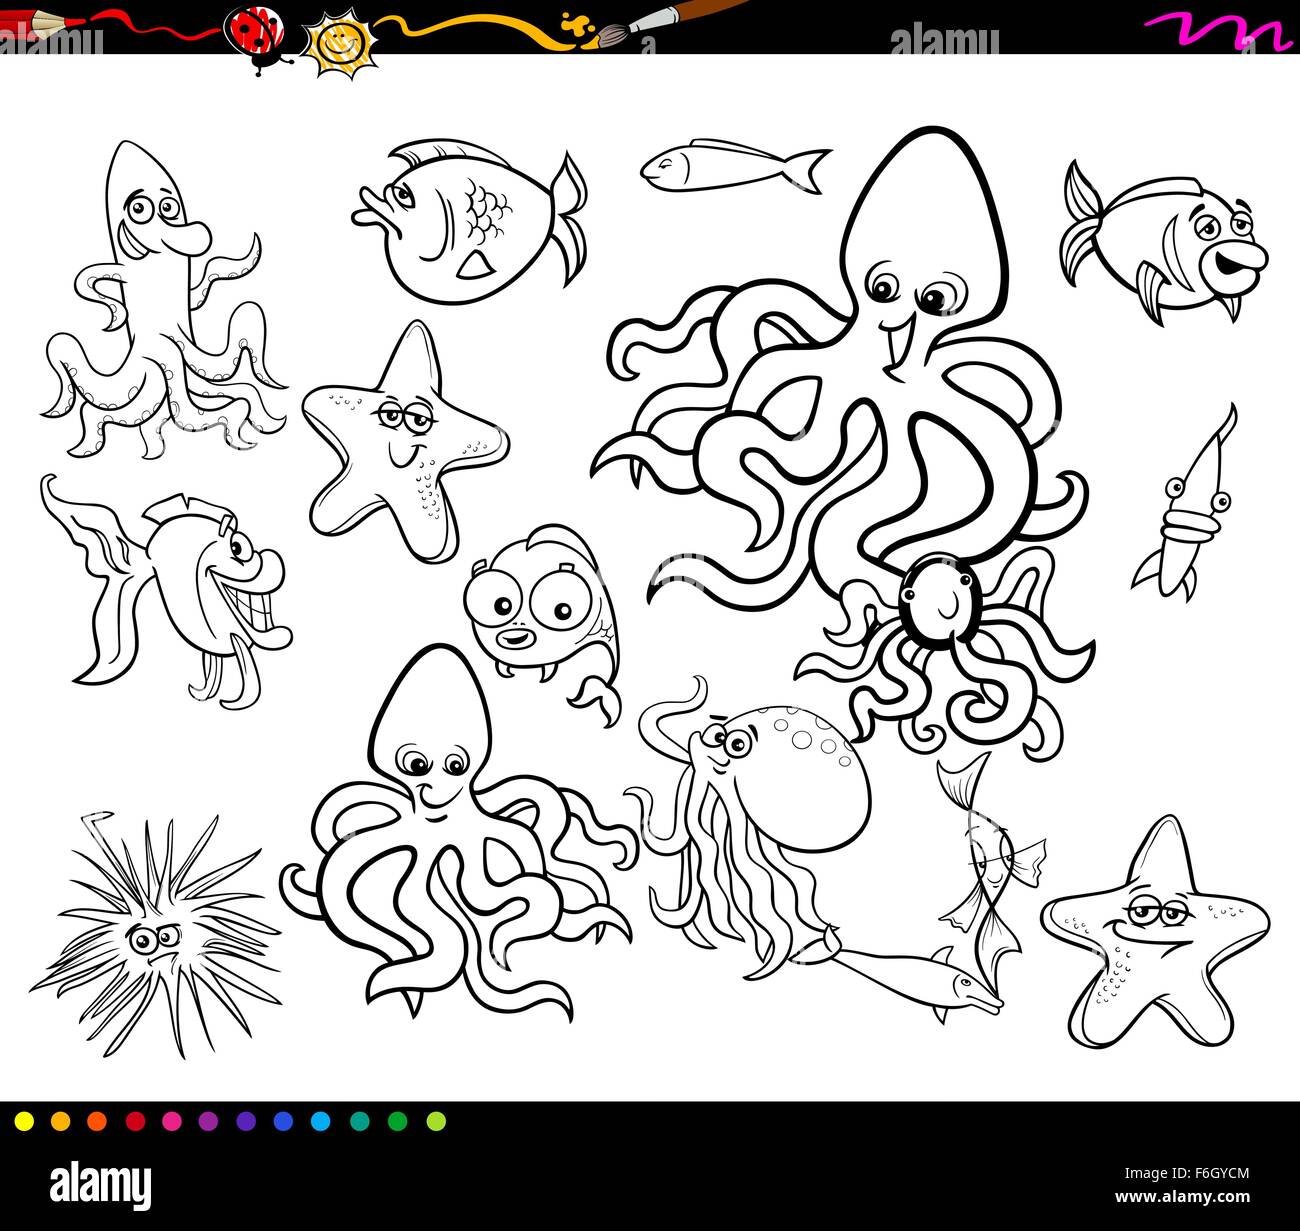 Dessin animé en noir et blanc des illustrations d'animaux de la mer drôles de poissons et à colorier pour groupe de caractères Illustration de Vecteur